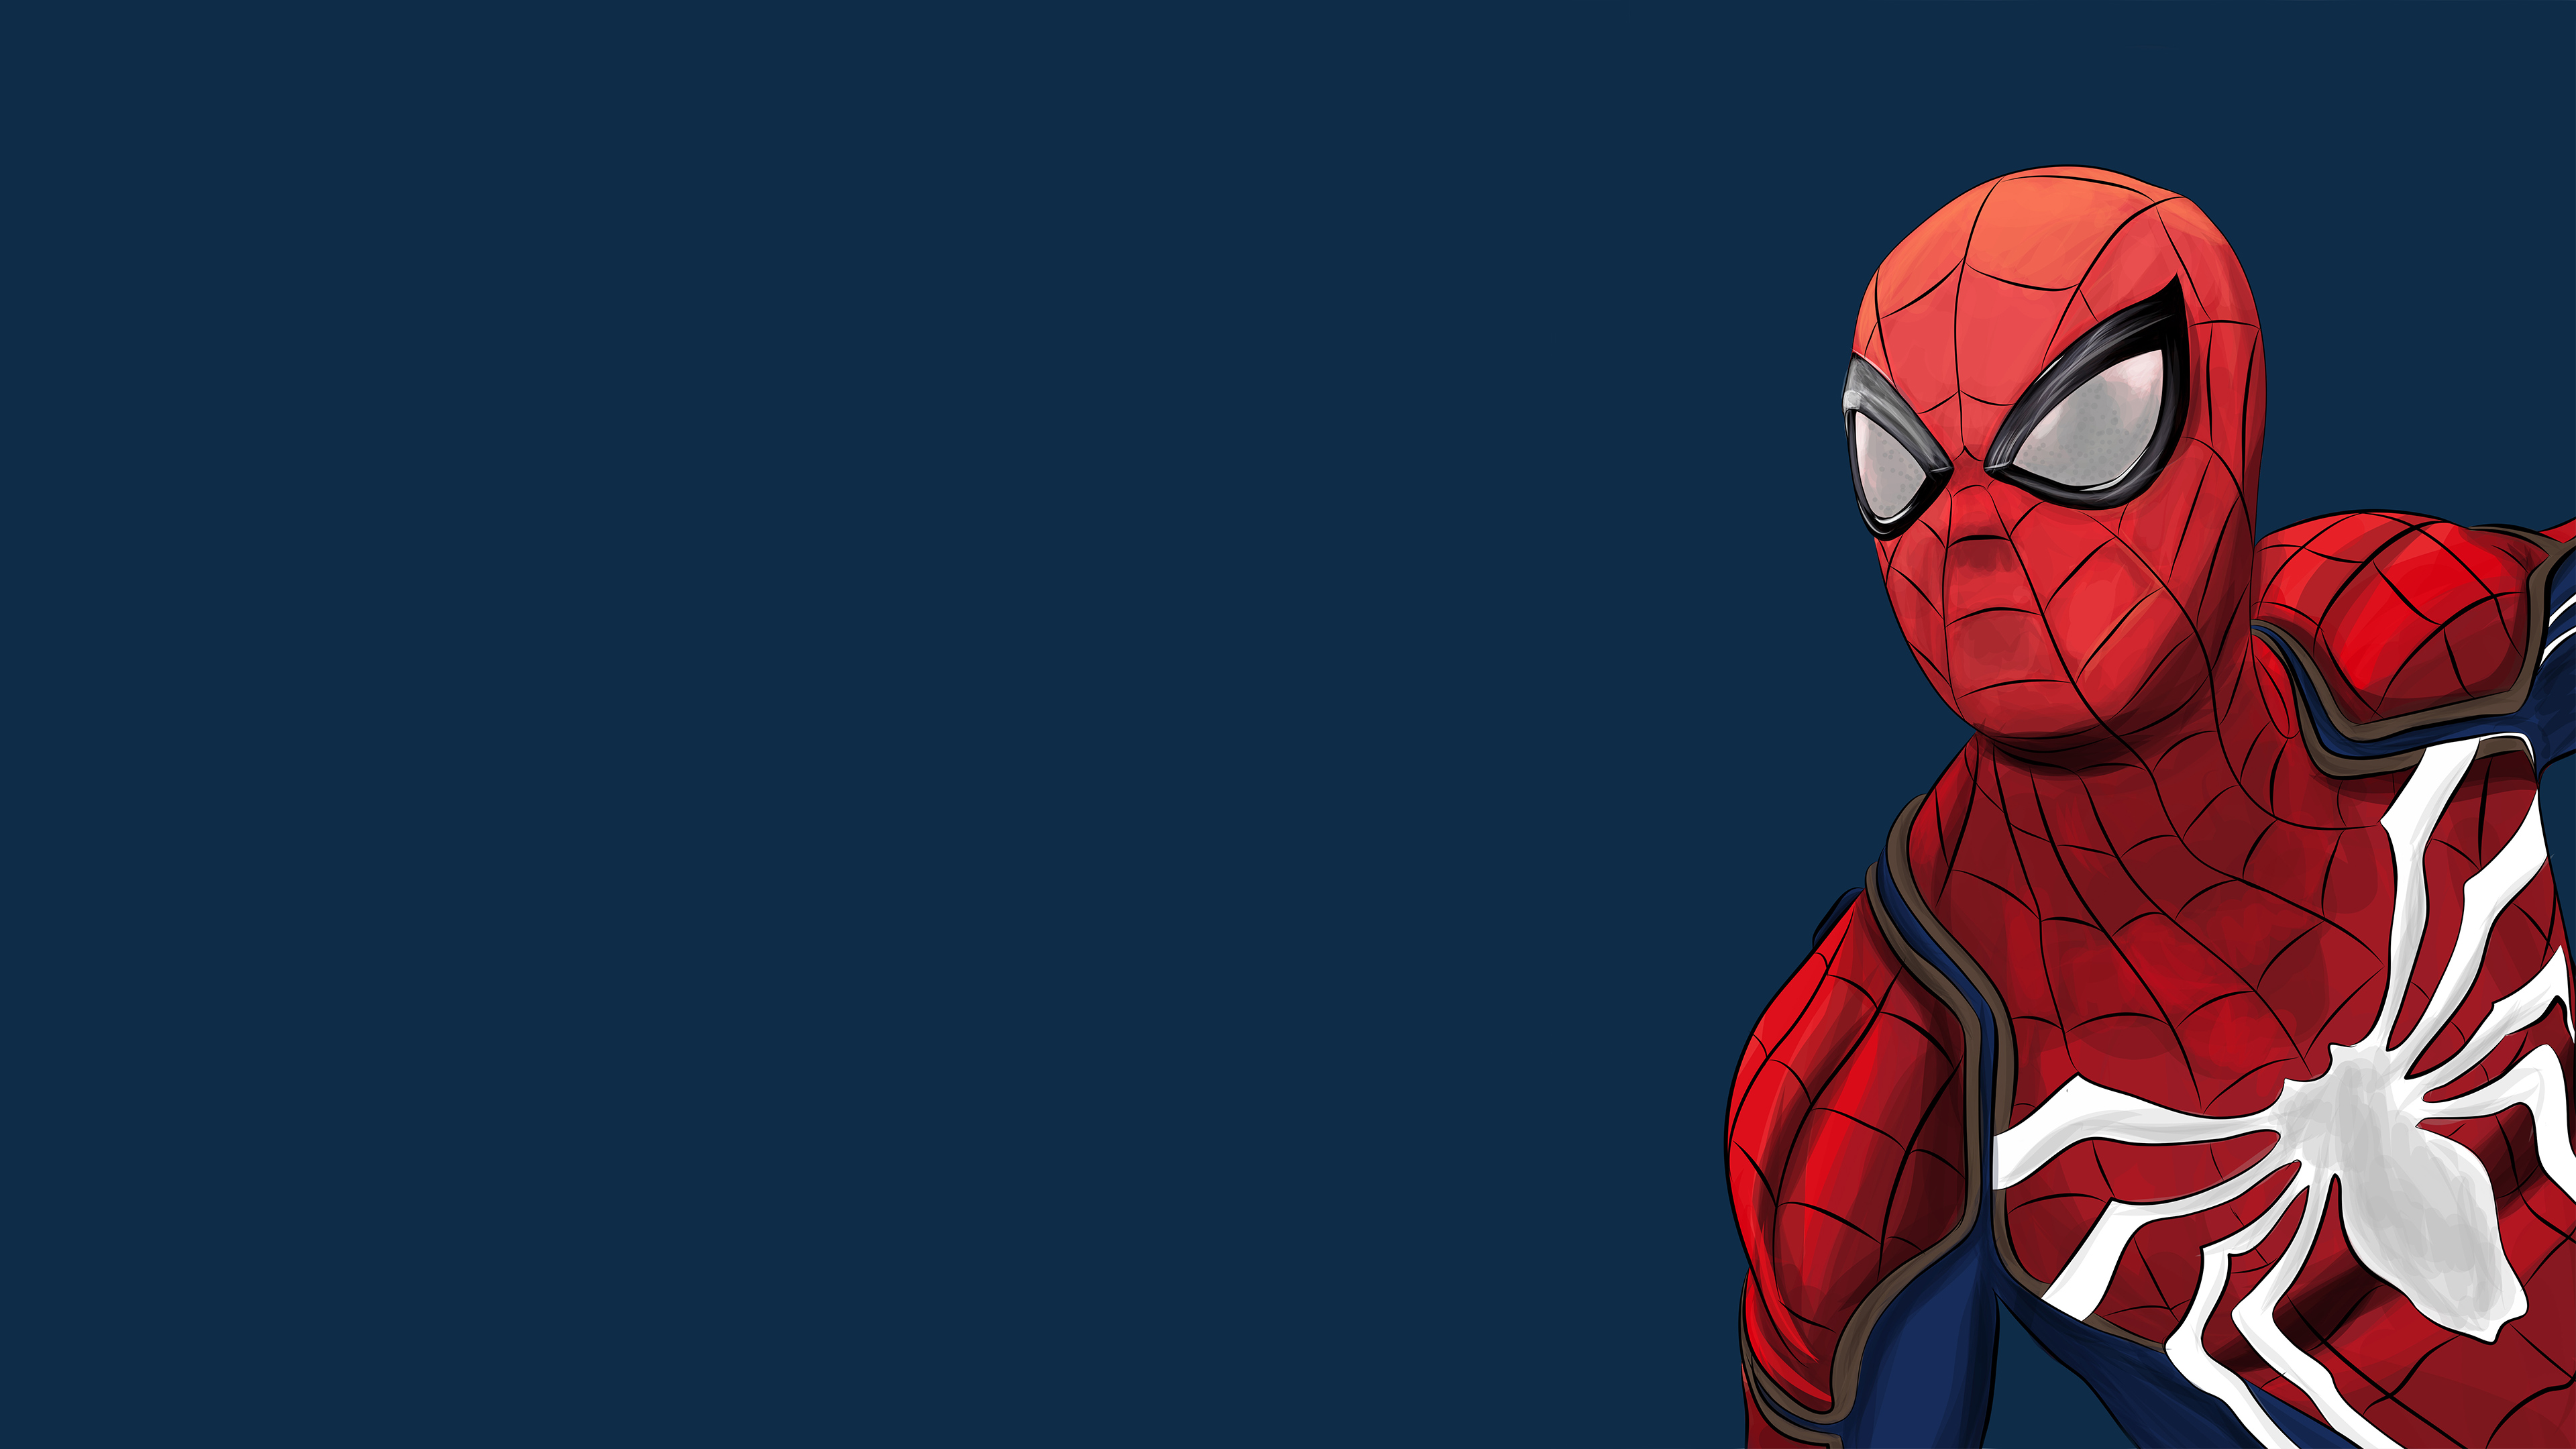 Spiderman Ps4 Artwork 4k 2018, HD Superheroes, 4k ...